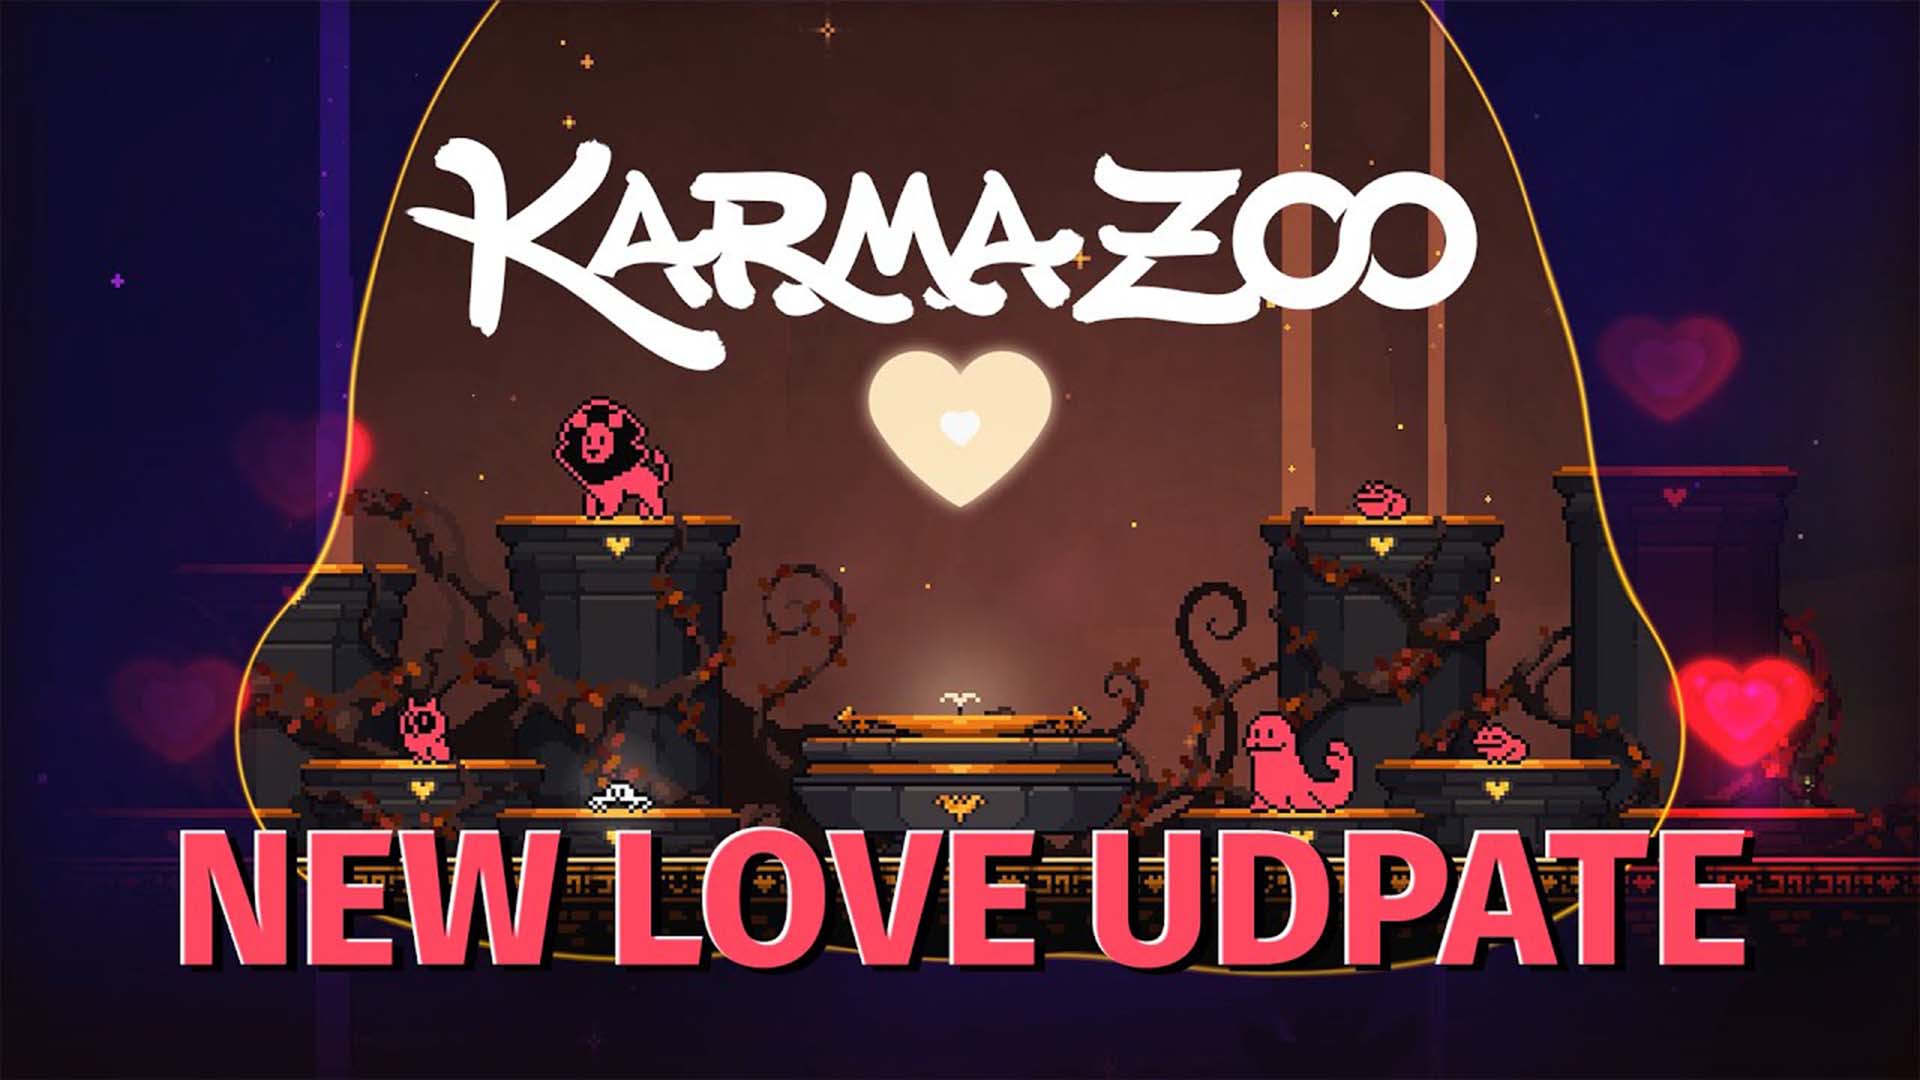 飄散在空氣中的甜美卡瑪！最高十人派對遊戲《卡瑪動物園》二月份-7-折特惠，請收下這份滿滿的愛